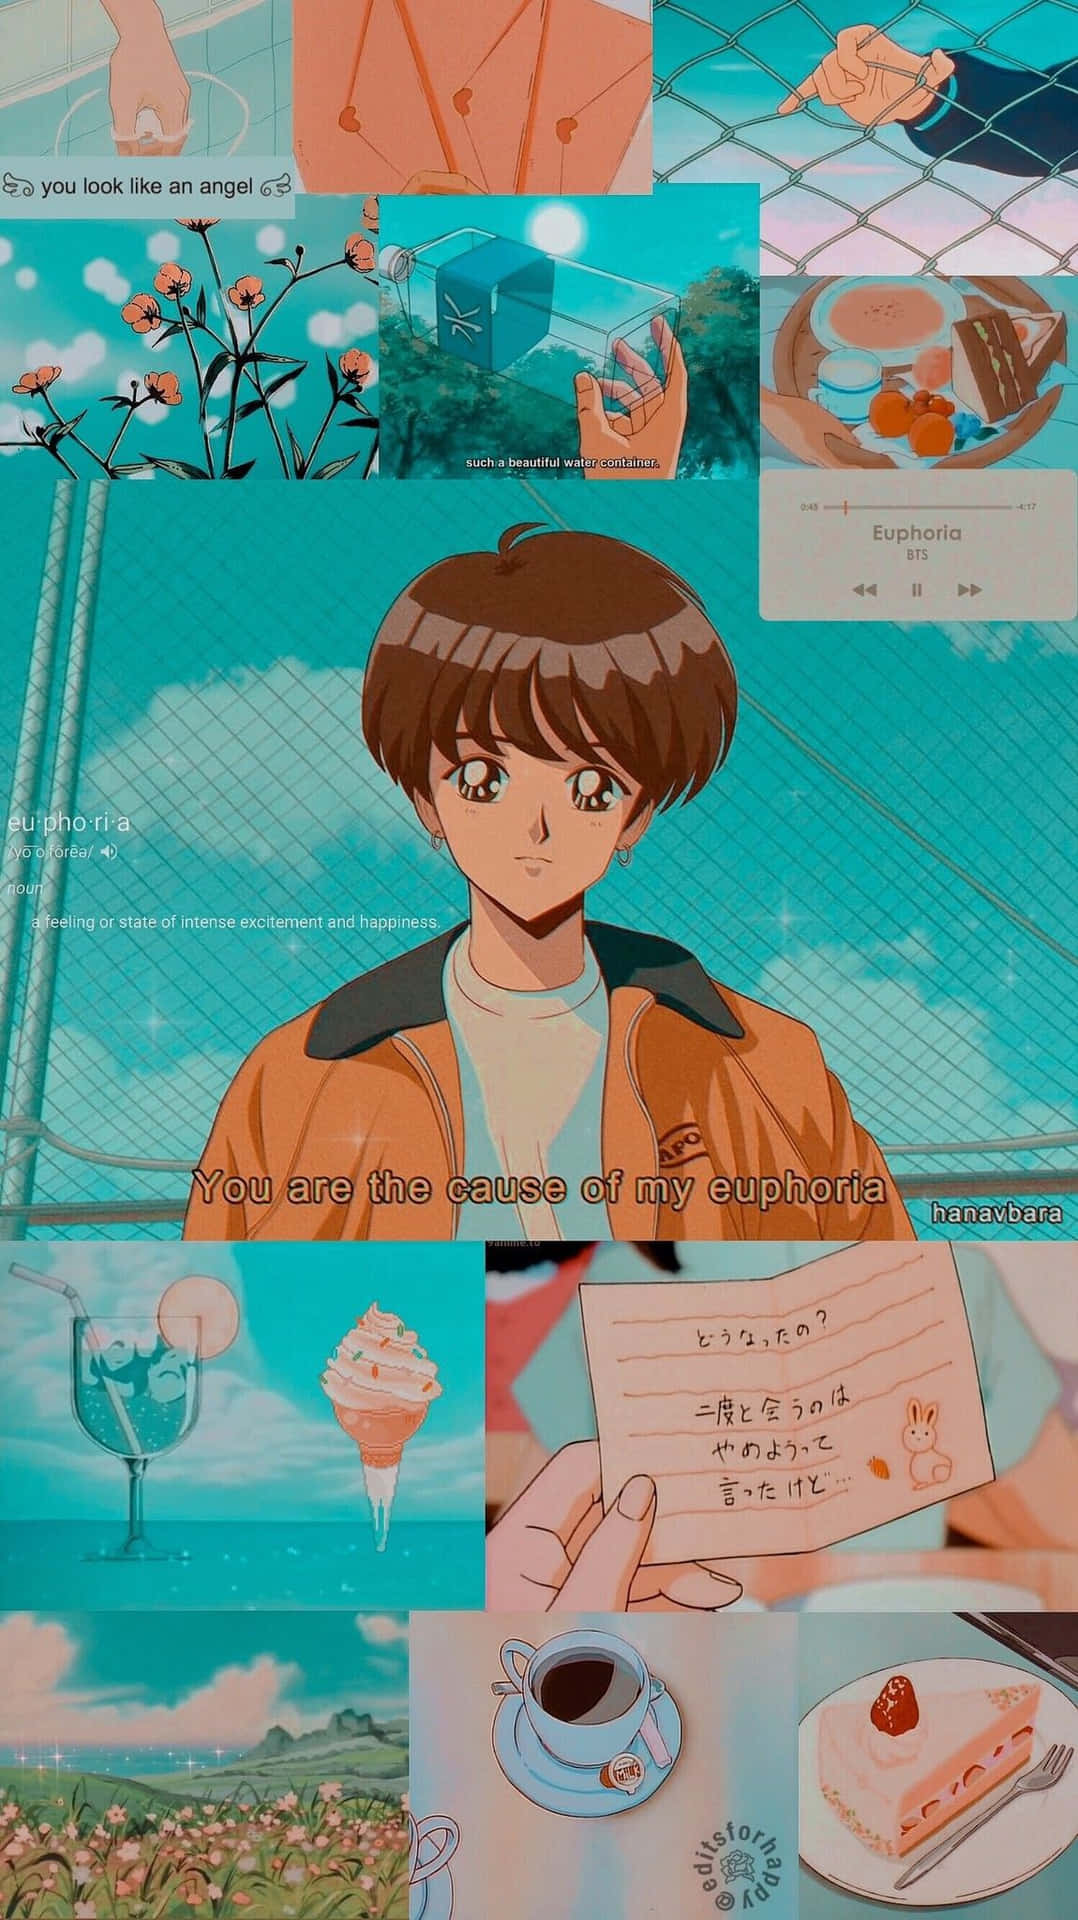 Enkollage Av Animebilder Med Olika Saker Wallpaper